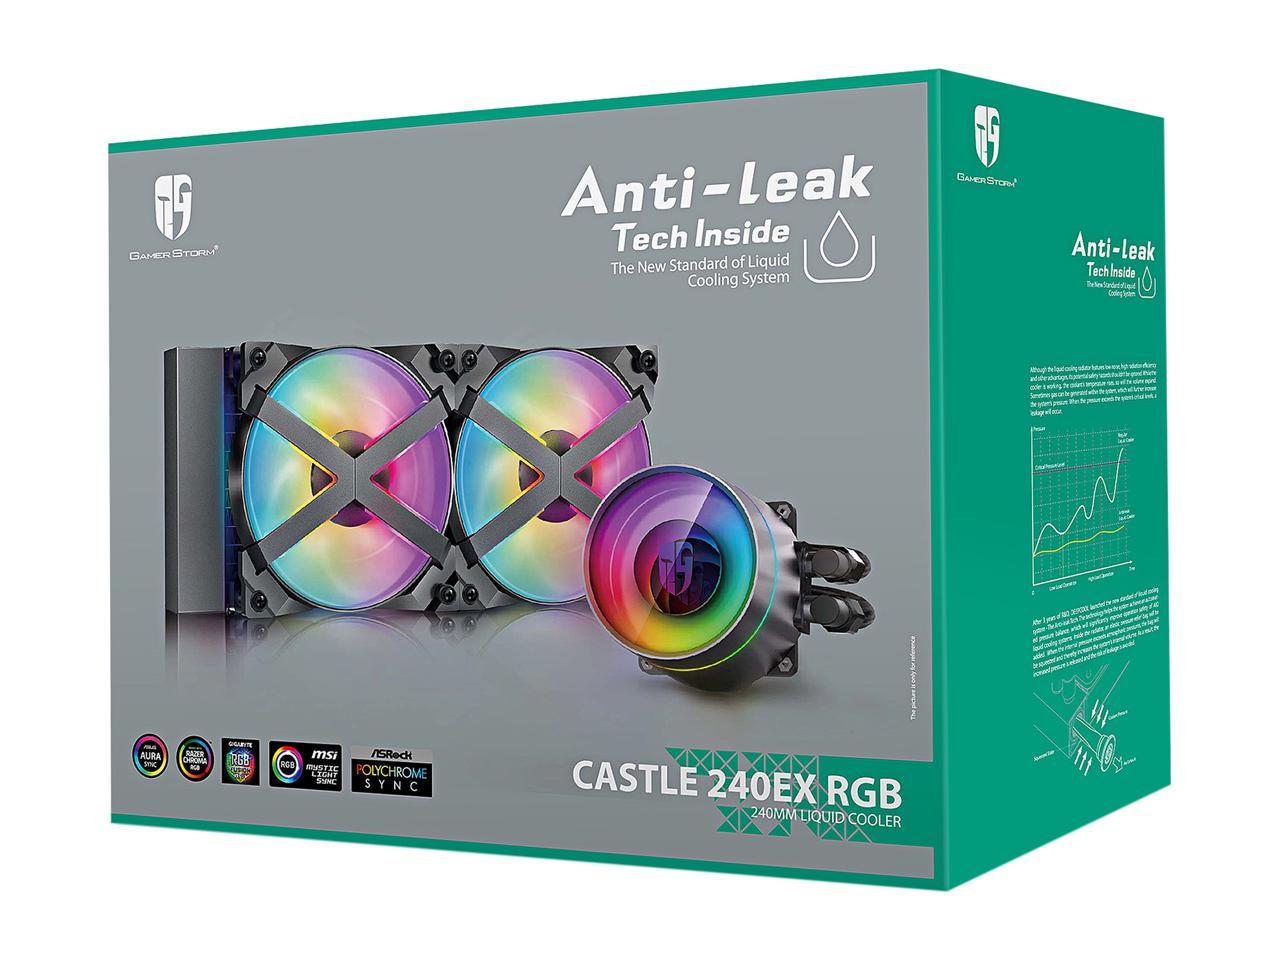 Deepcool Castle 240Ex Rgb Aio Liquid Cpu Cooler, Anti-Leak Technology, Two Mf120Gt A-Rgb Pwm Fans,